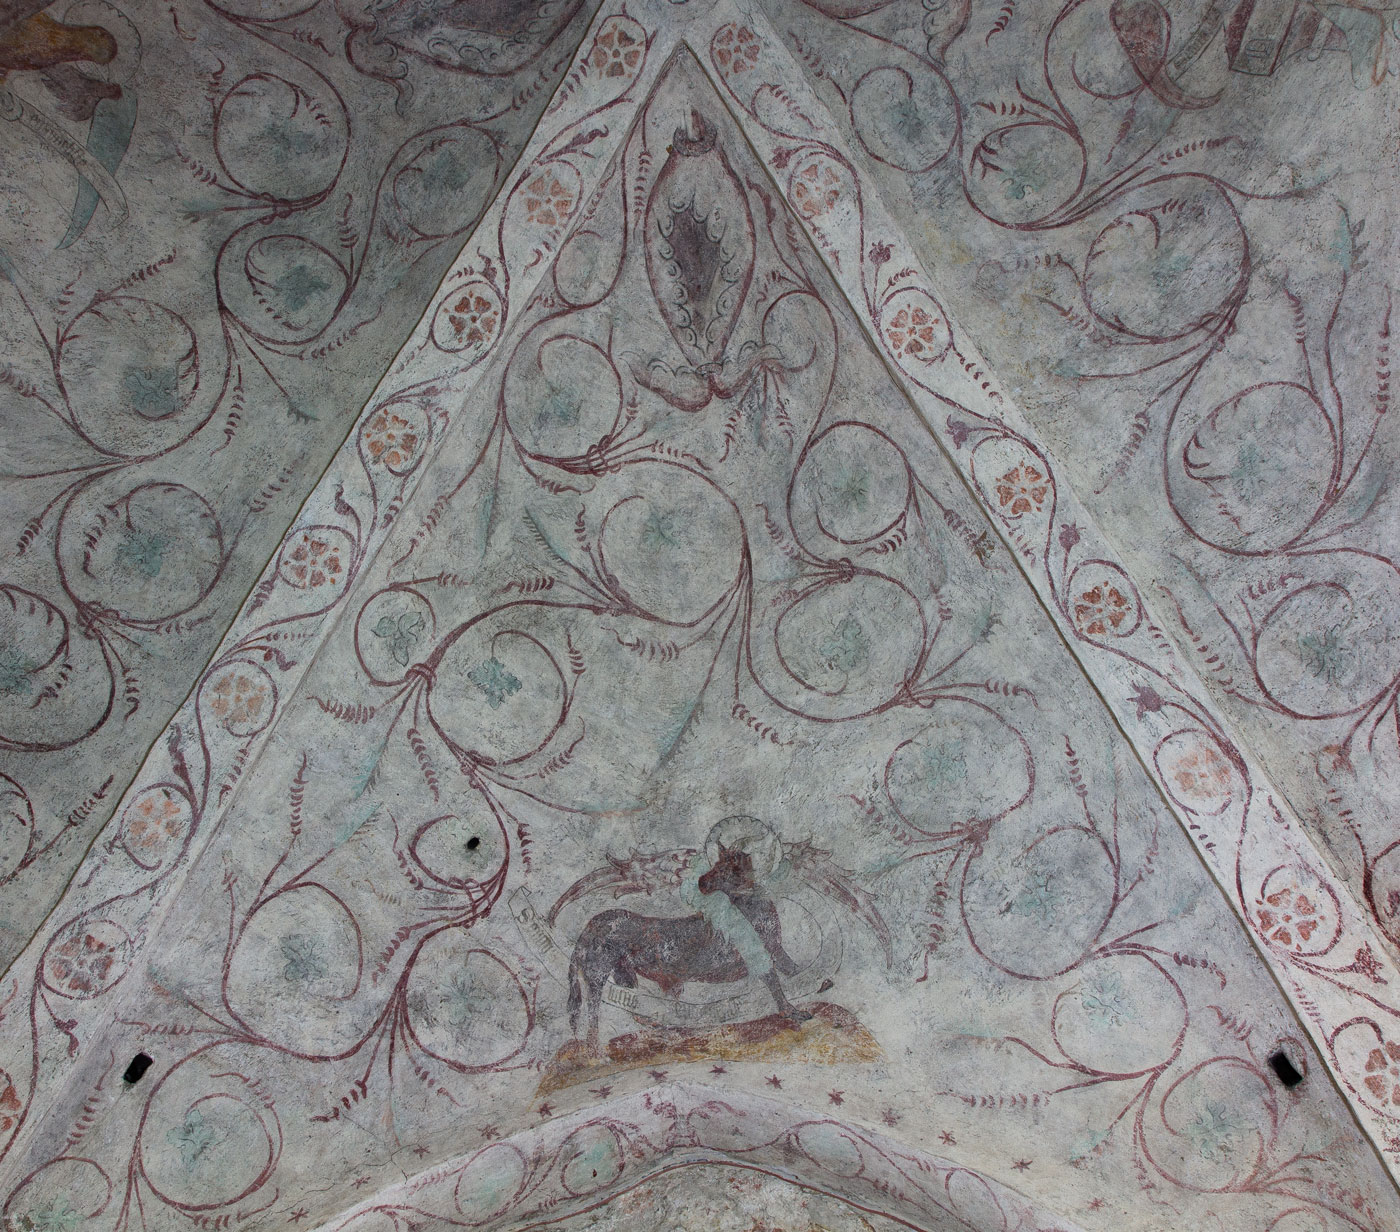 Målning från 1400-talets mitt: Evangelisten Lukas symbol, en oxe. (Jämte fragment av målningslager från slutet av 1400-talet) - Håbo-Tibble kyrka